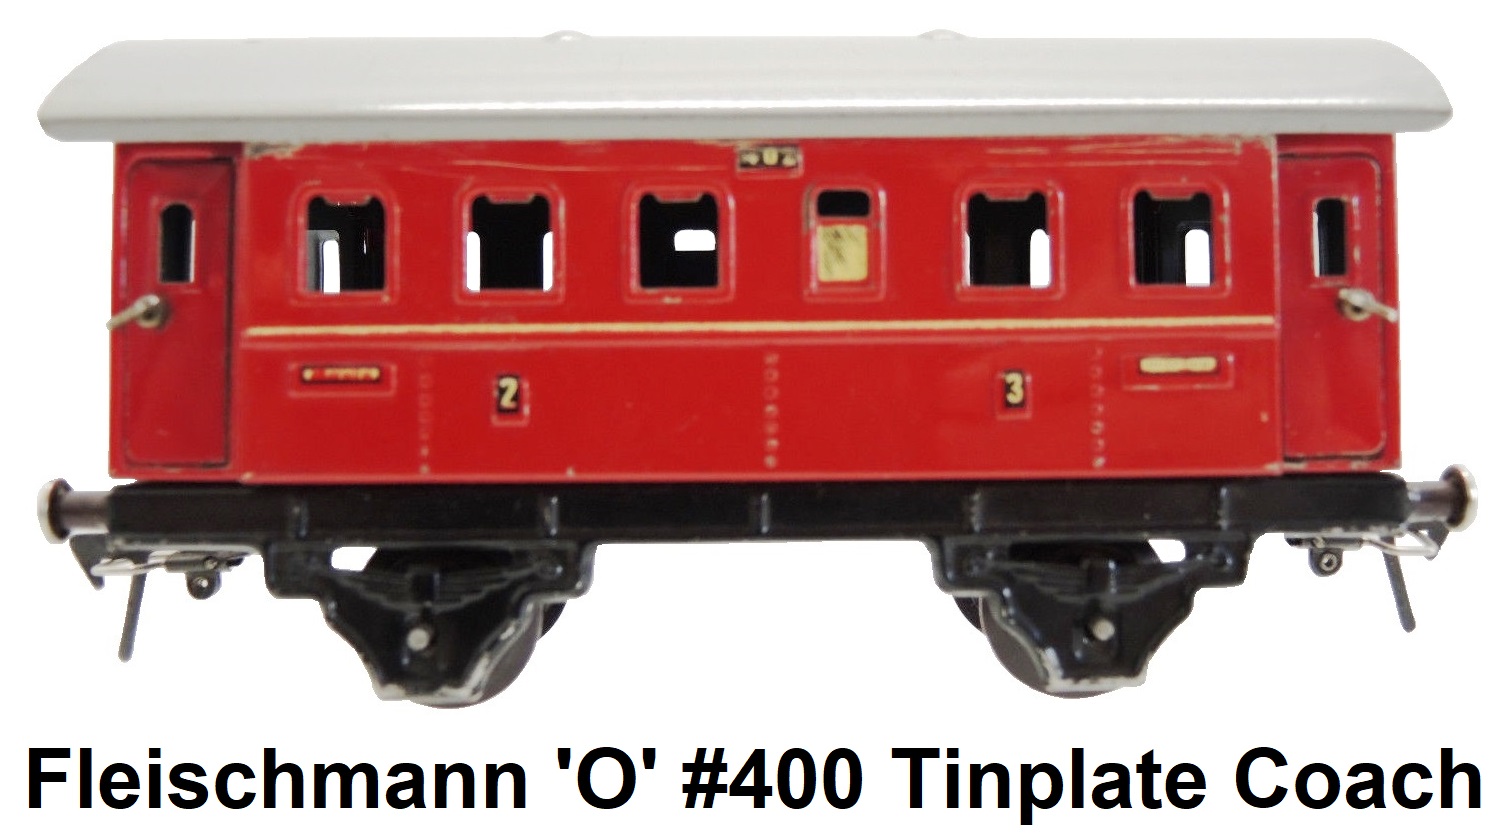 Fleischmann 'O' gauge 4-wheeled #400 tinplate passenger coach